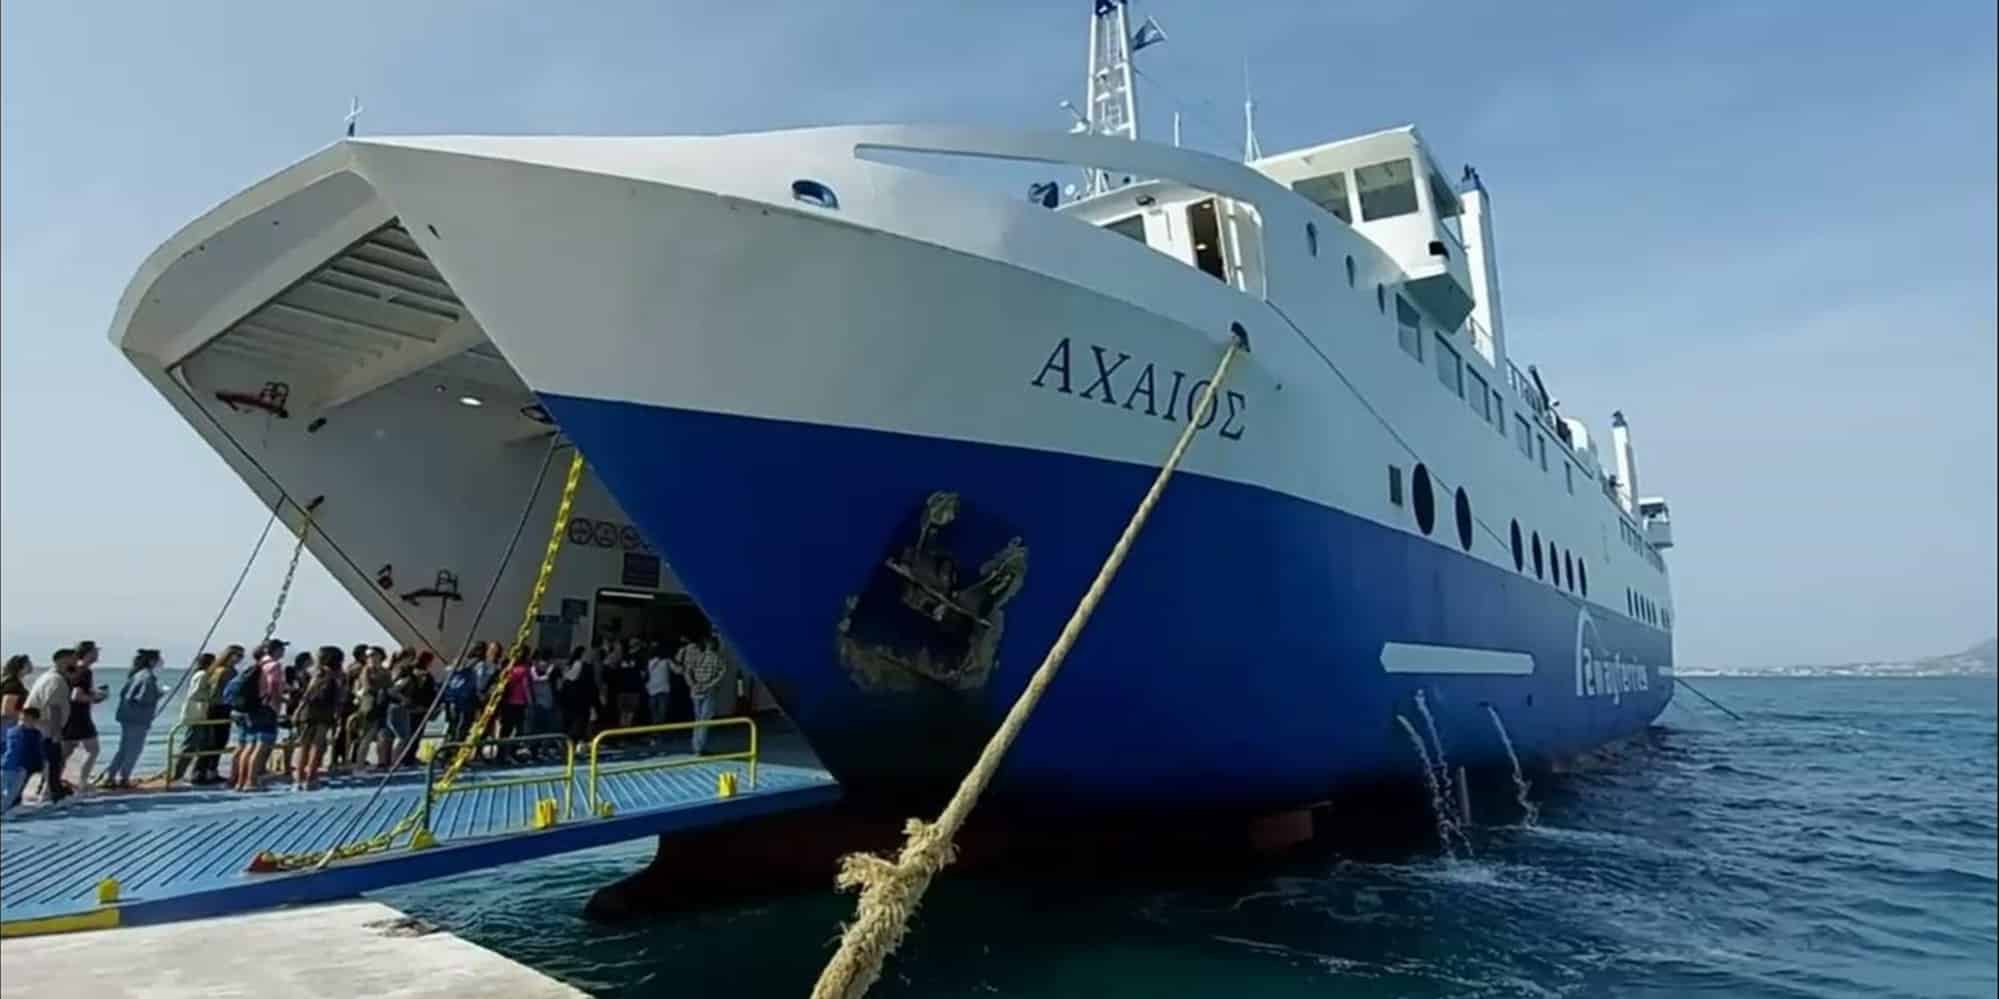 Μάχη για να δέσει το πλοίο «Αχαιός» στο λιμάνι στην Αίγινα